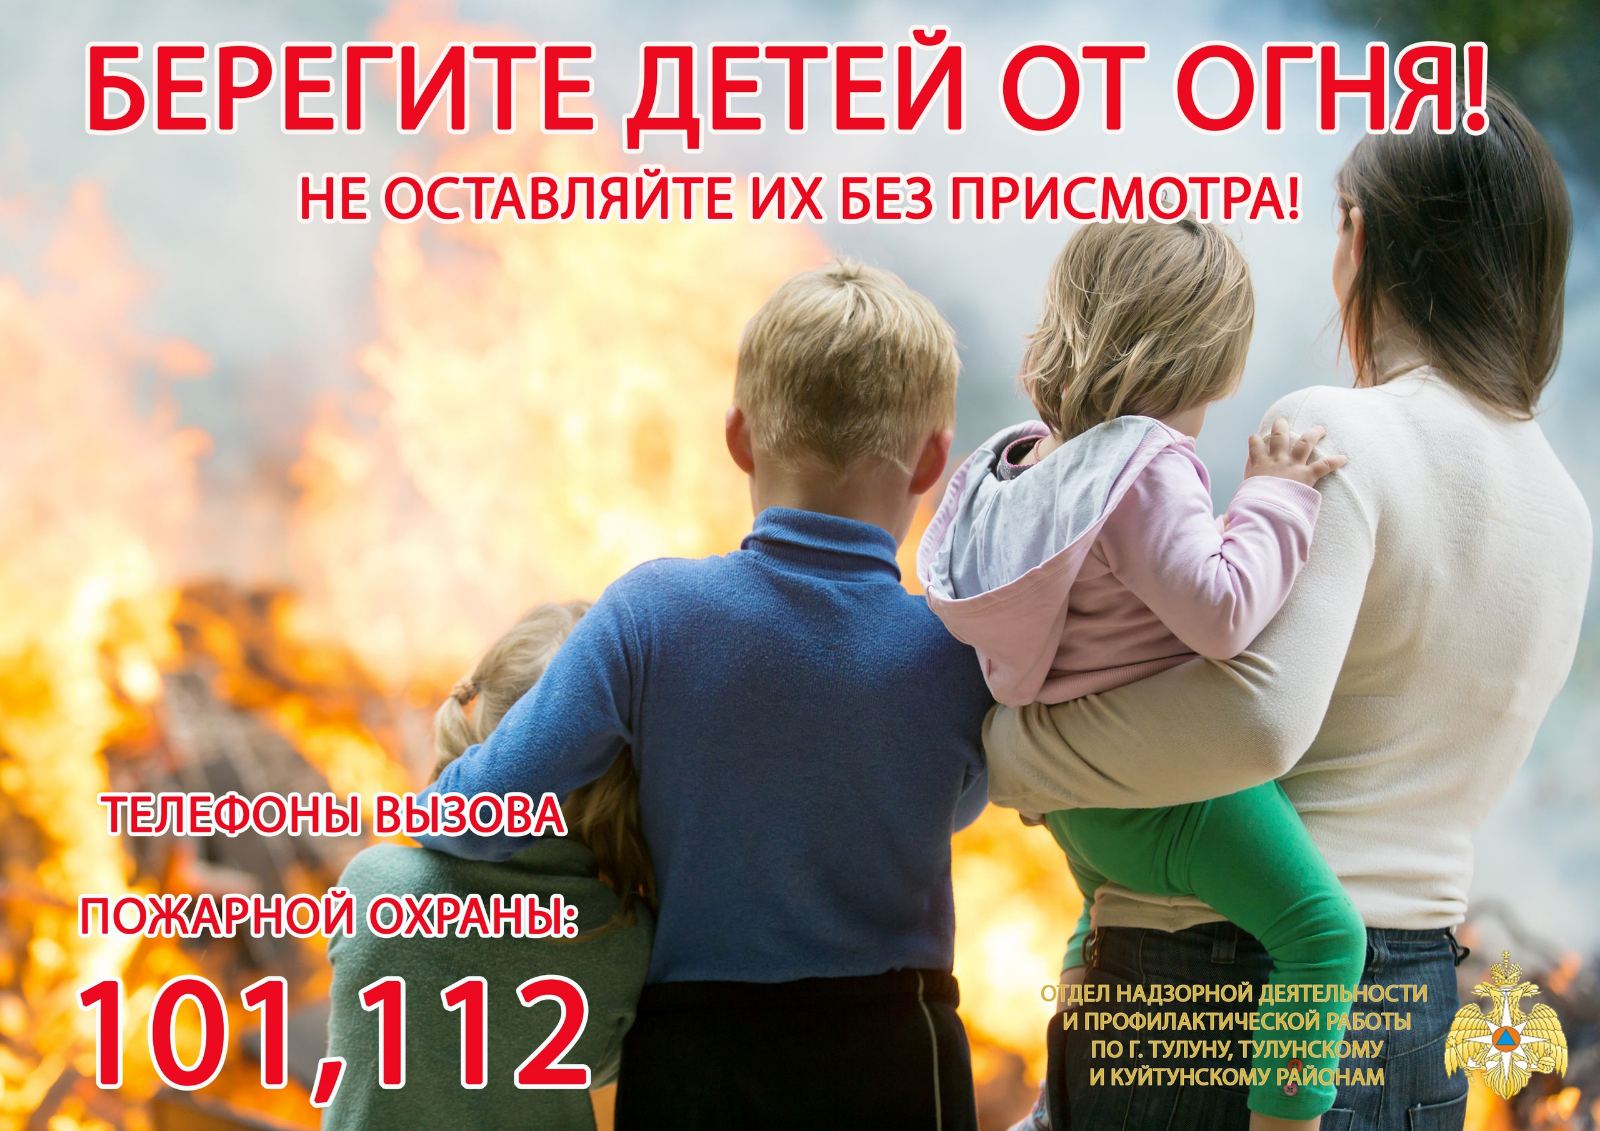 Дети защити жизнь. Берегите детей от пожара. Берегите детей от пожара не оставляйте детей без присмотра. Родители берегите детей от пожара. Береги детей от огня.